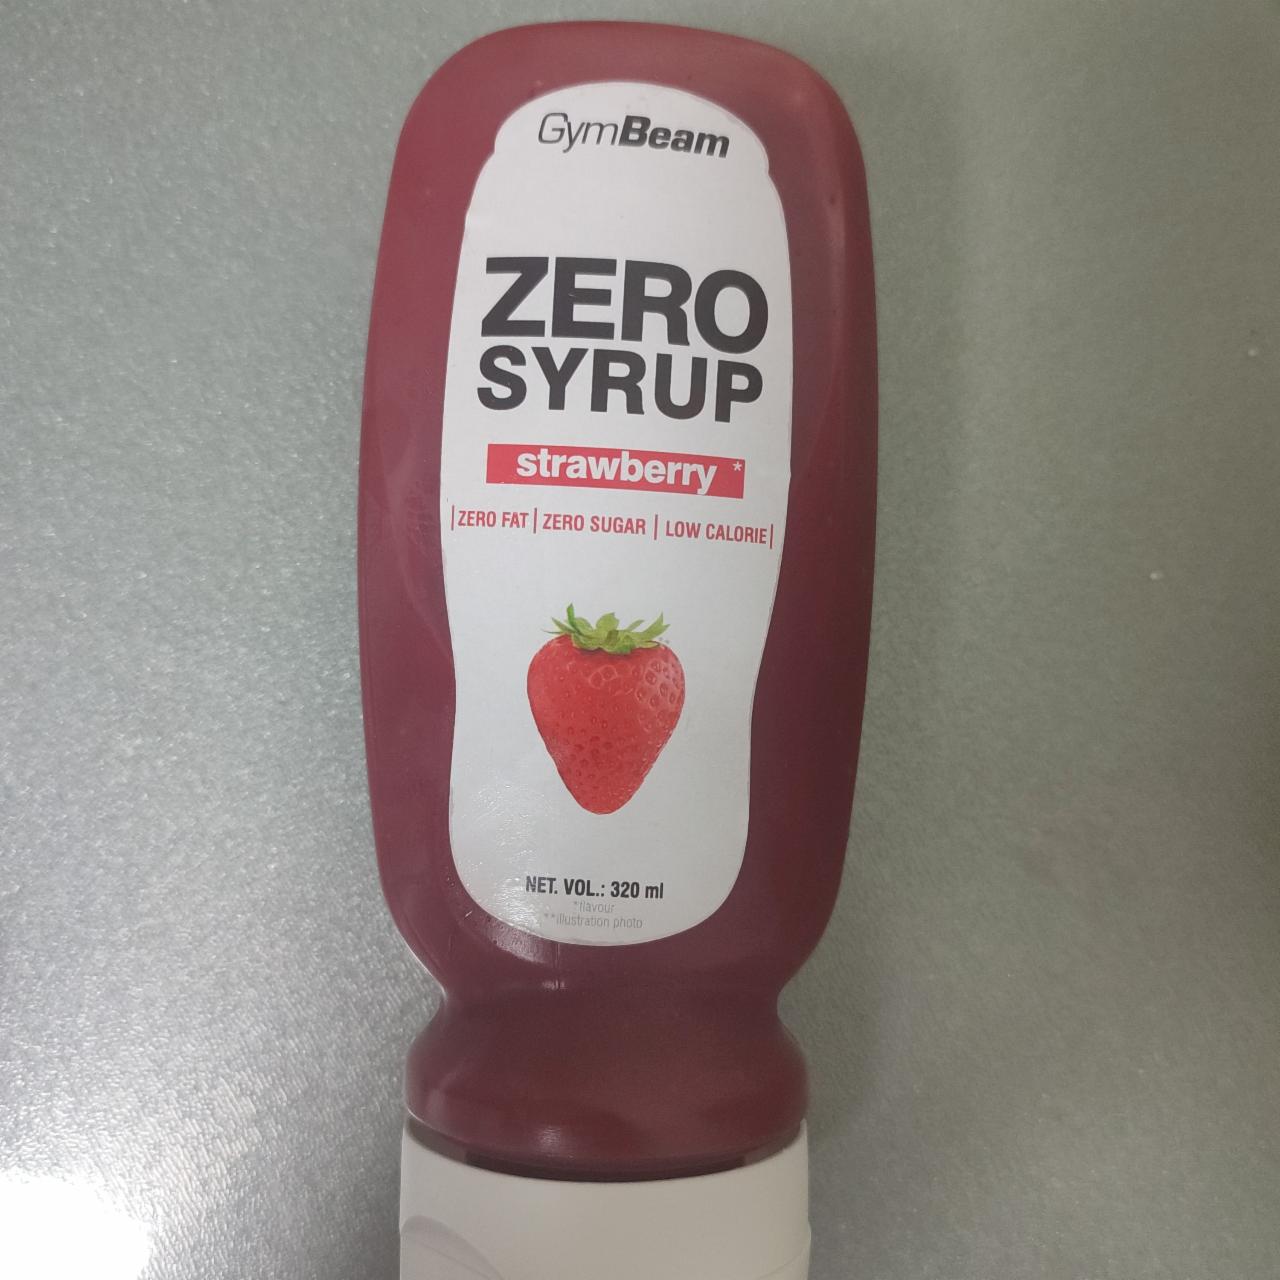 Képek - Zero syrup strawberry GymBeam